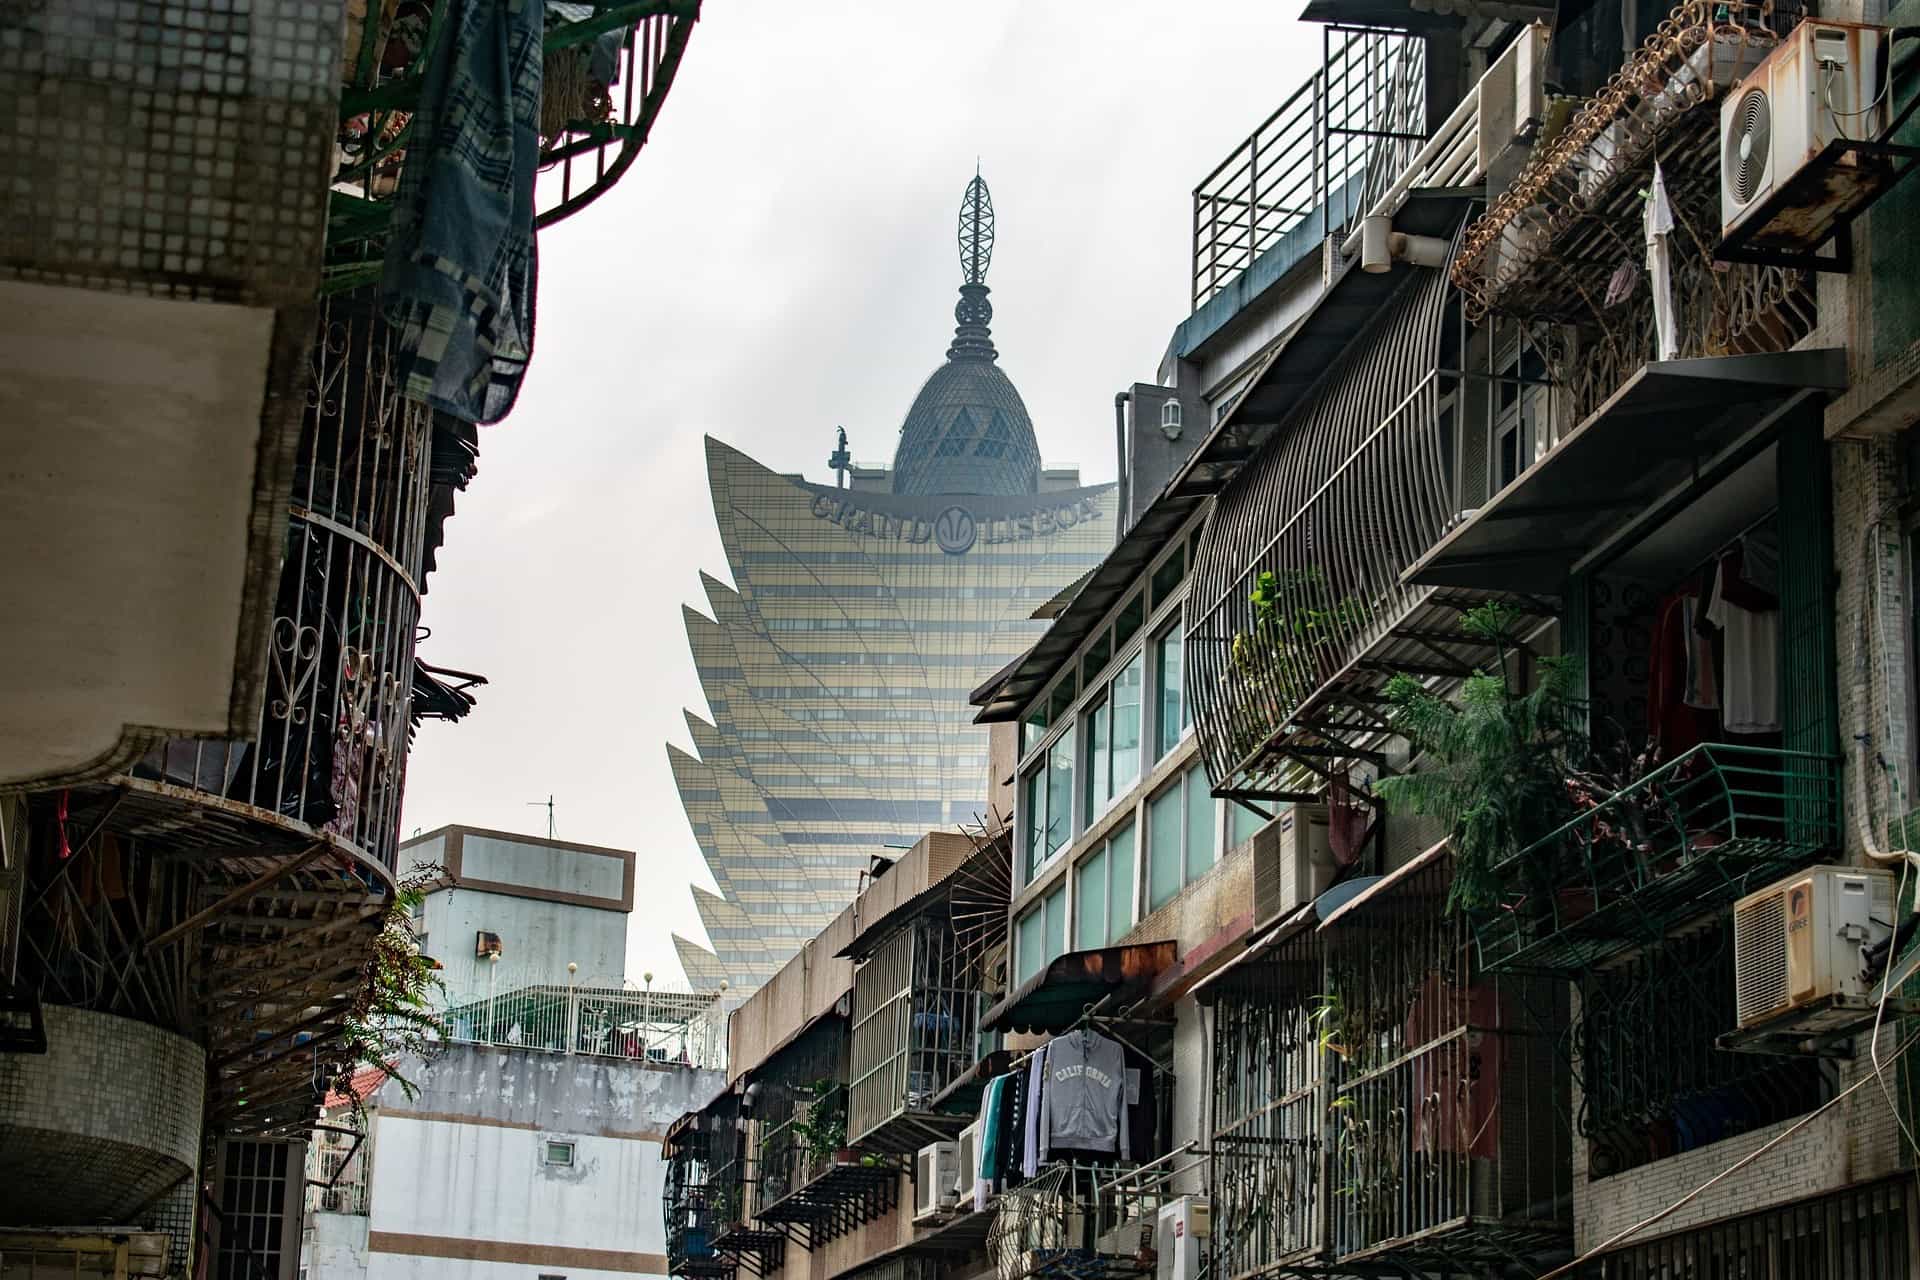 Hinter den kleineren Wohnhäusern ragt eines der berühmten Casinogebäude Macaus in den Himmel.